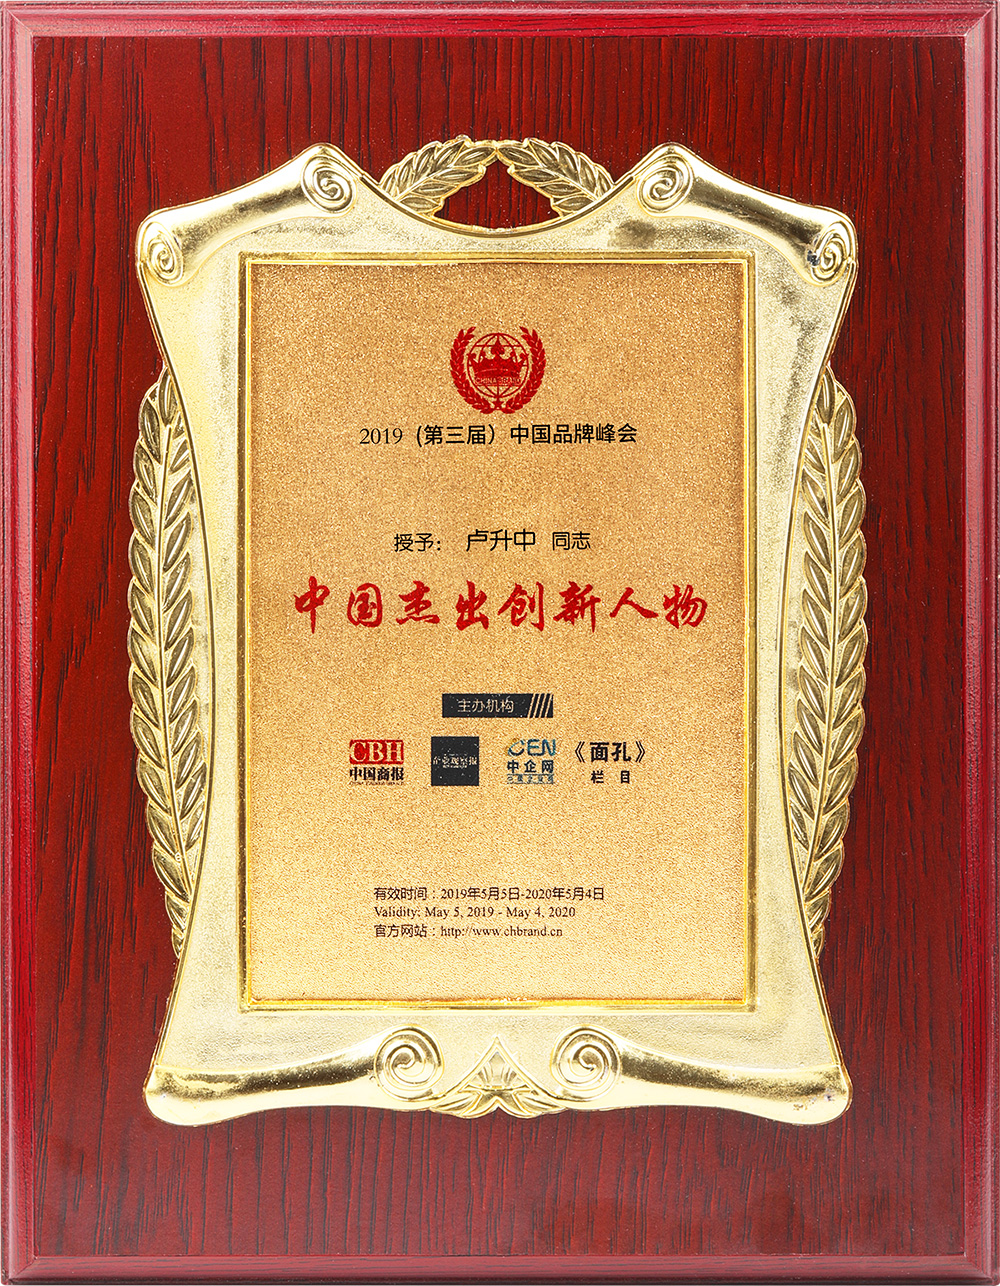 授予:卢升中同志——中国杰出创新人物